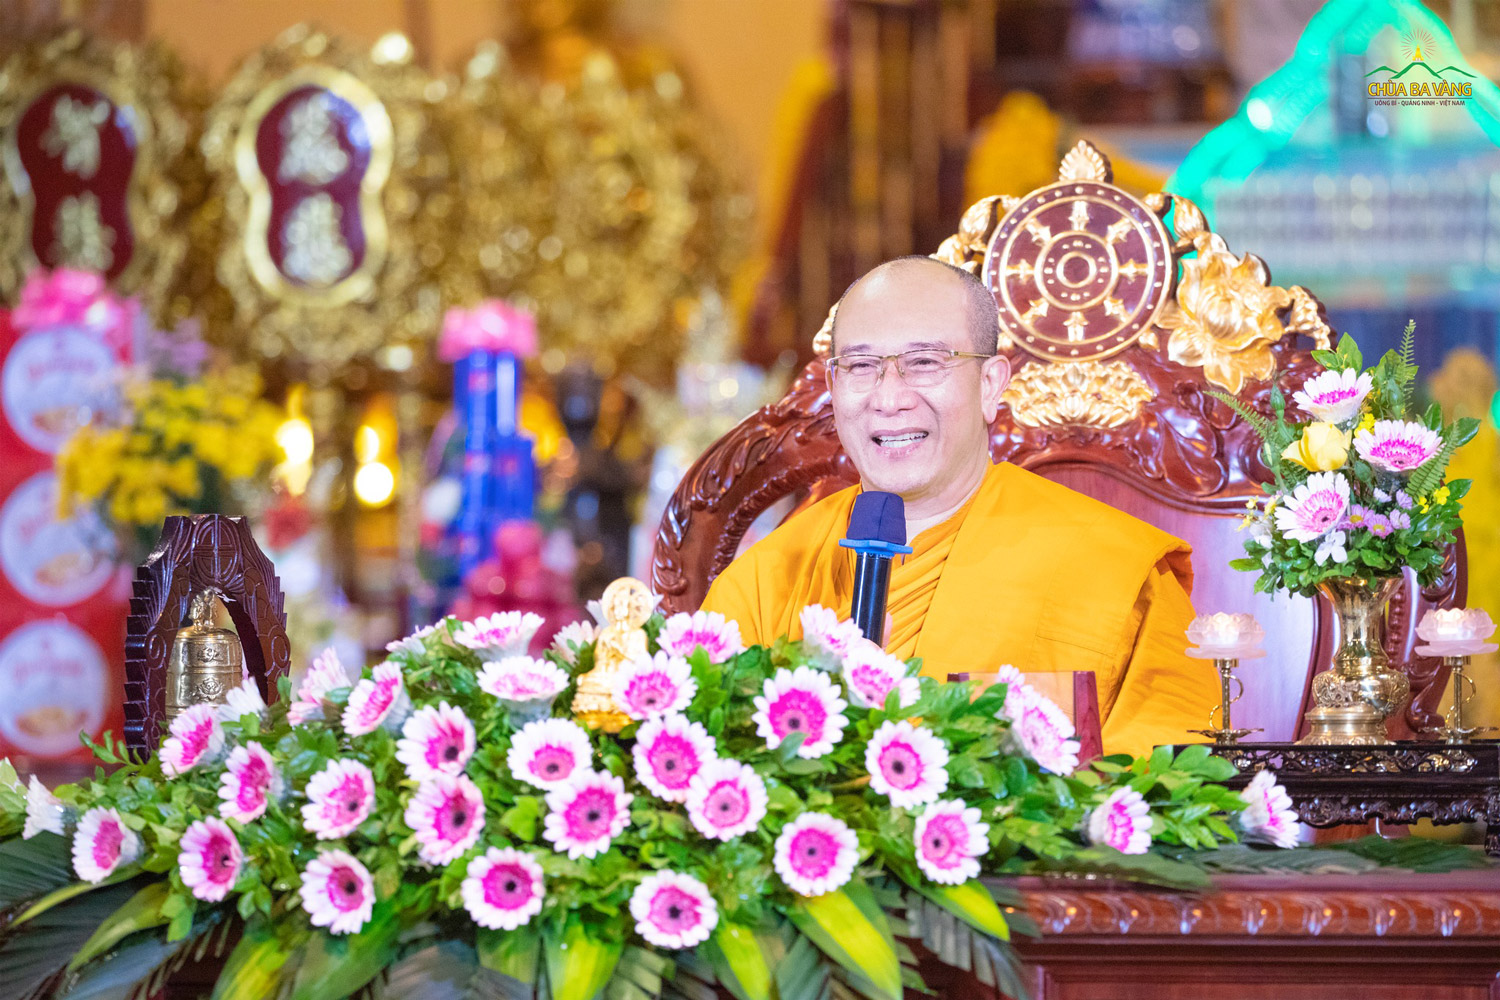 Thể theo lời thỉnh cầu của các Phật tử, trong buổi giảng Pháp ngày 08/12/Tân Sửu vừa qua, Sư Phụ Thích Trúc Thái Minh đã truyền trao cho đại chúng một thời Pháp nhũ quý báu qua bài giảng: “Người mang hạnh phúc cho nhân loại”